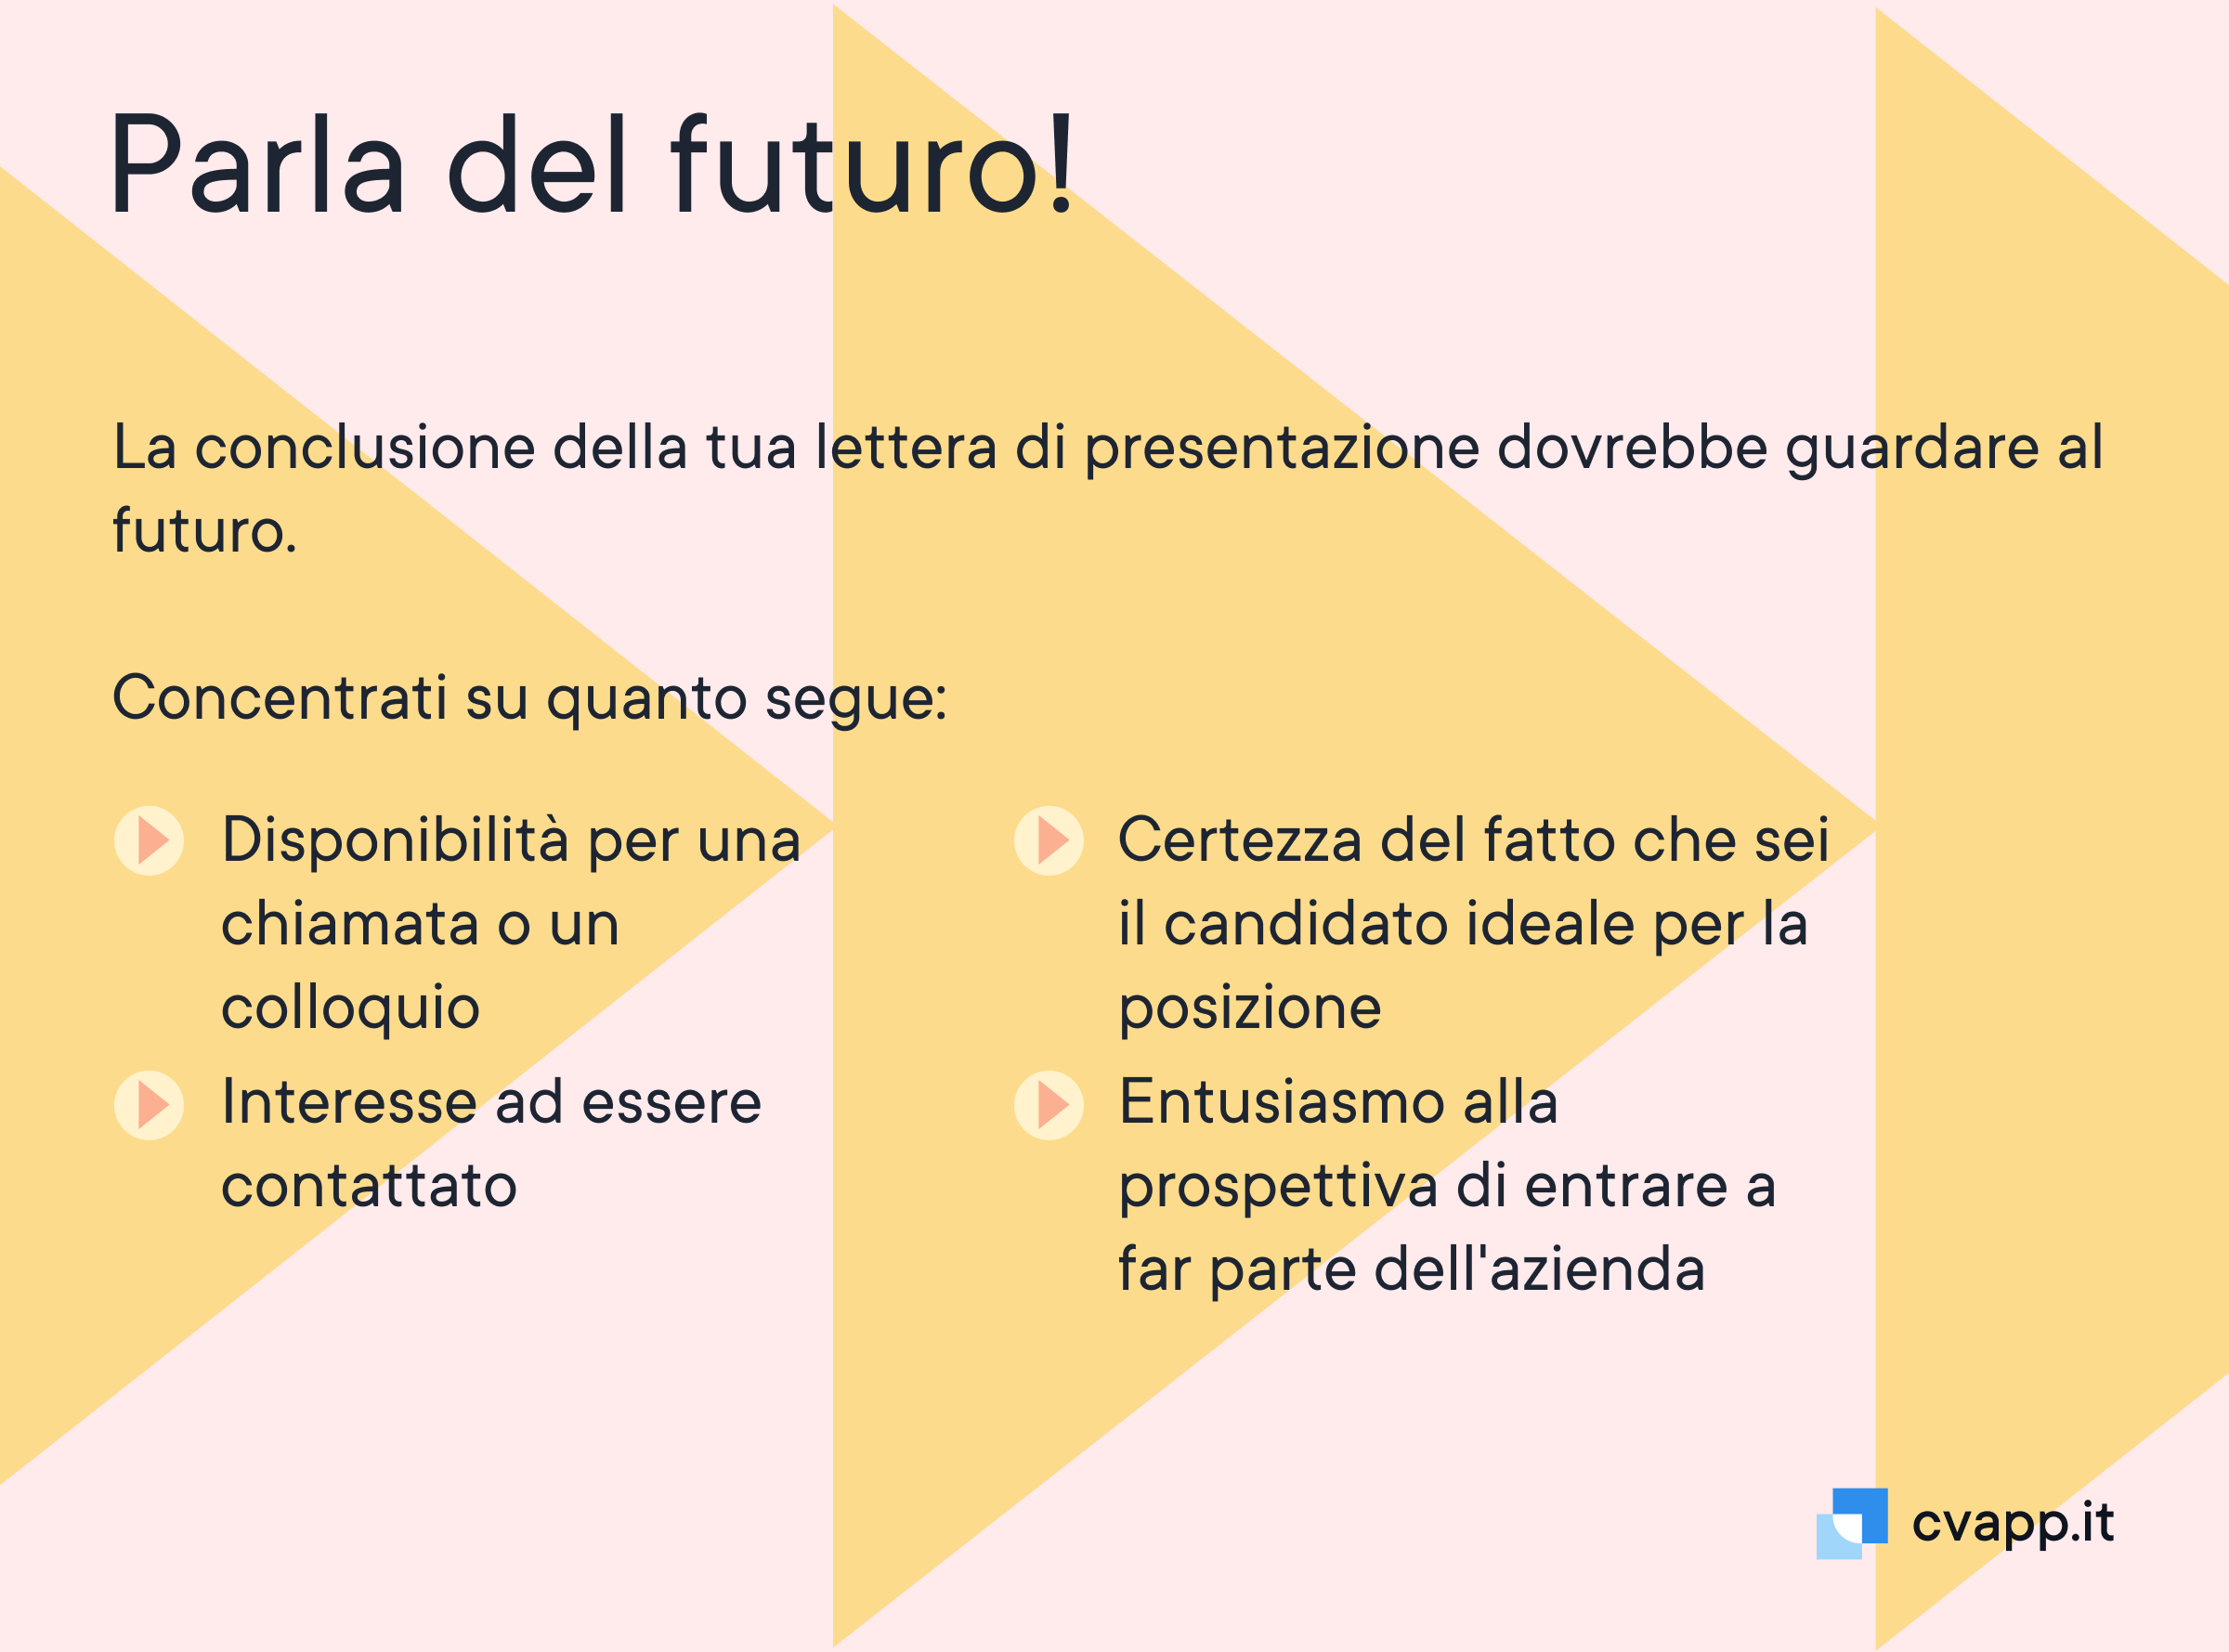 Come guardare al futuro nella tua lettera di presentazione